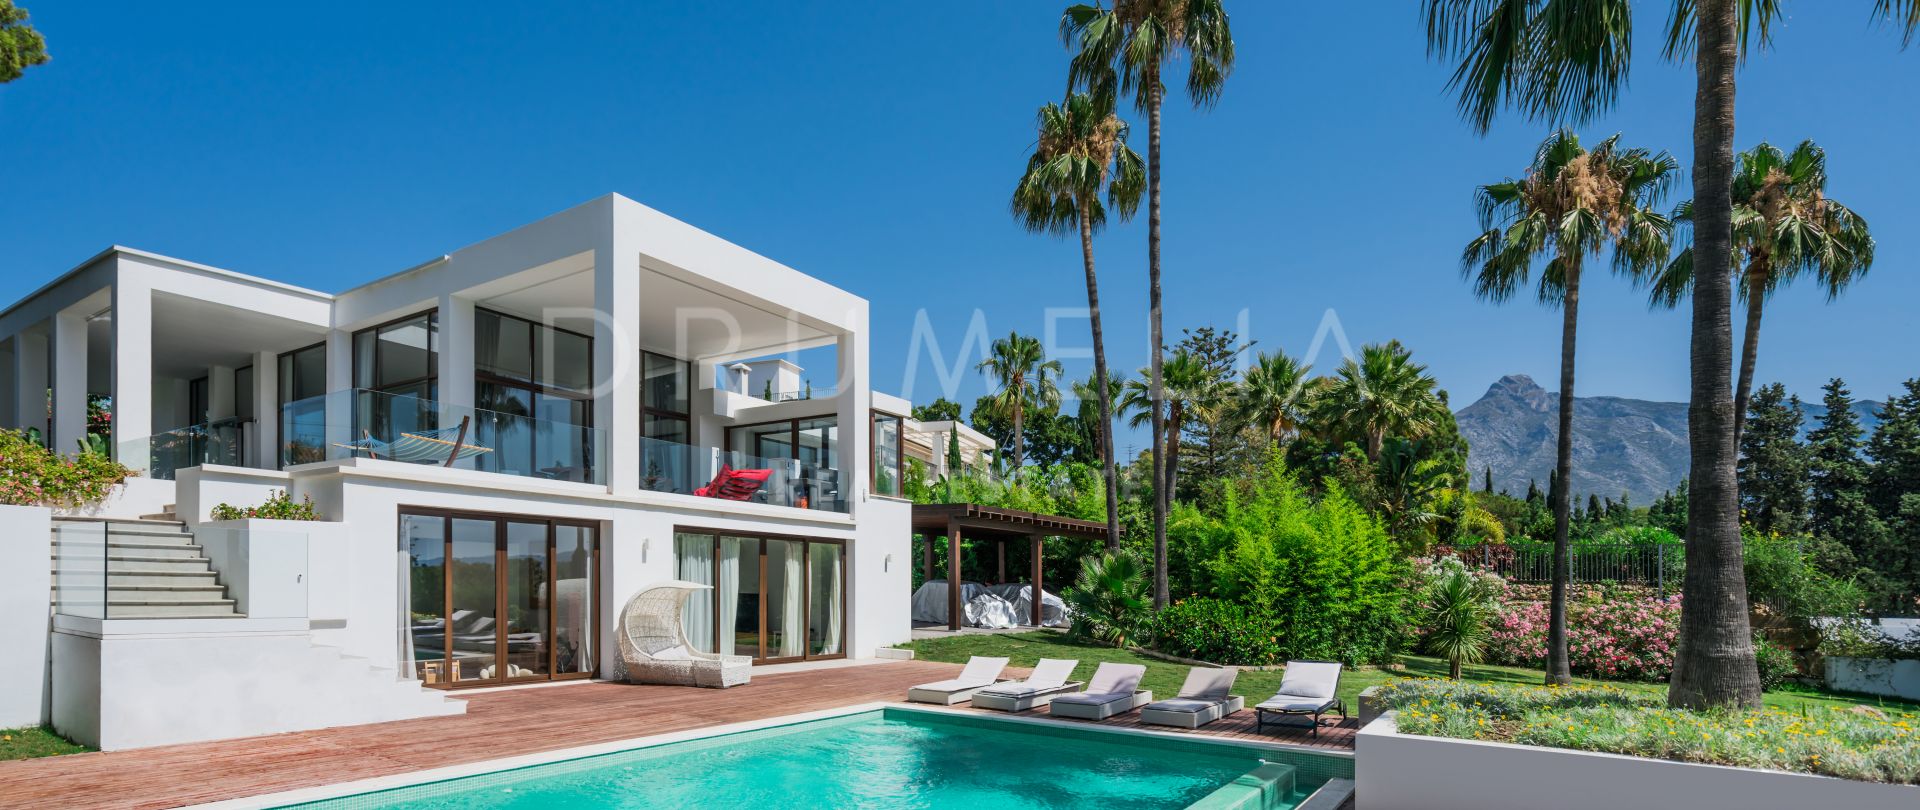 Impresionante Villa de lujo de estilo contemporaneo en Rio Verde, Milla de Oro, Marbella